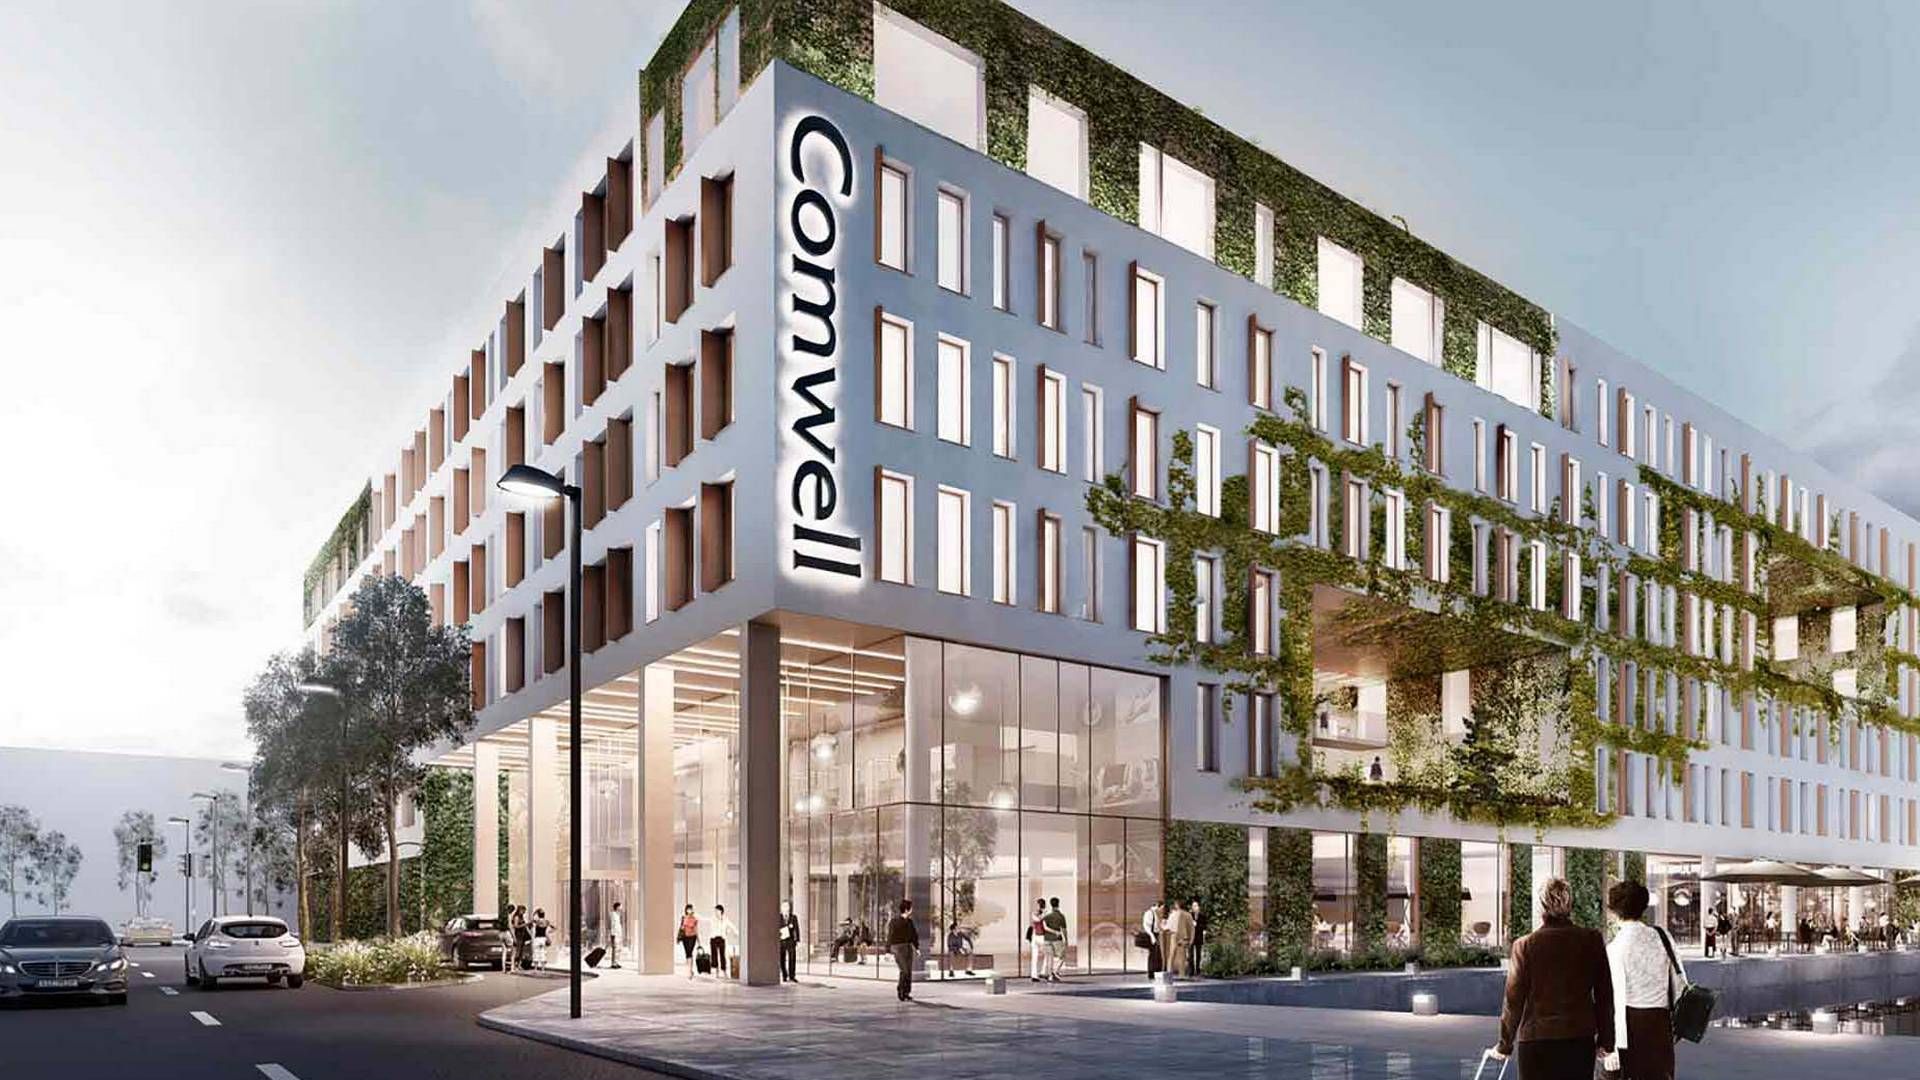 Arkitekttegning af det kommende Comwell-hotel i Nordhavn i København. Hotellet forventes færdigt i 2020. | Foto: PR